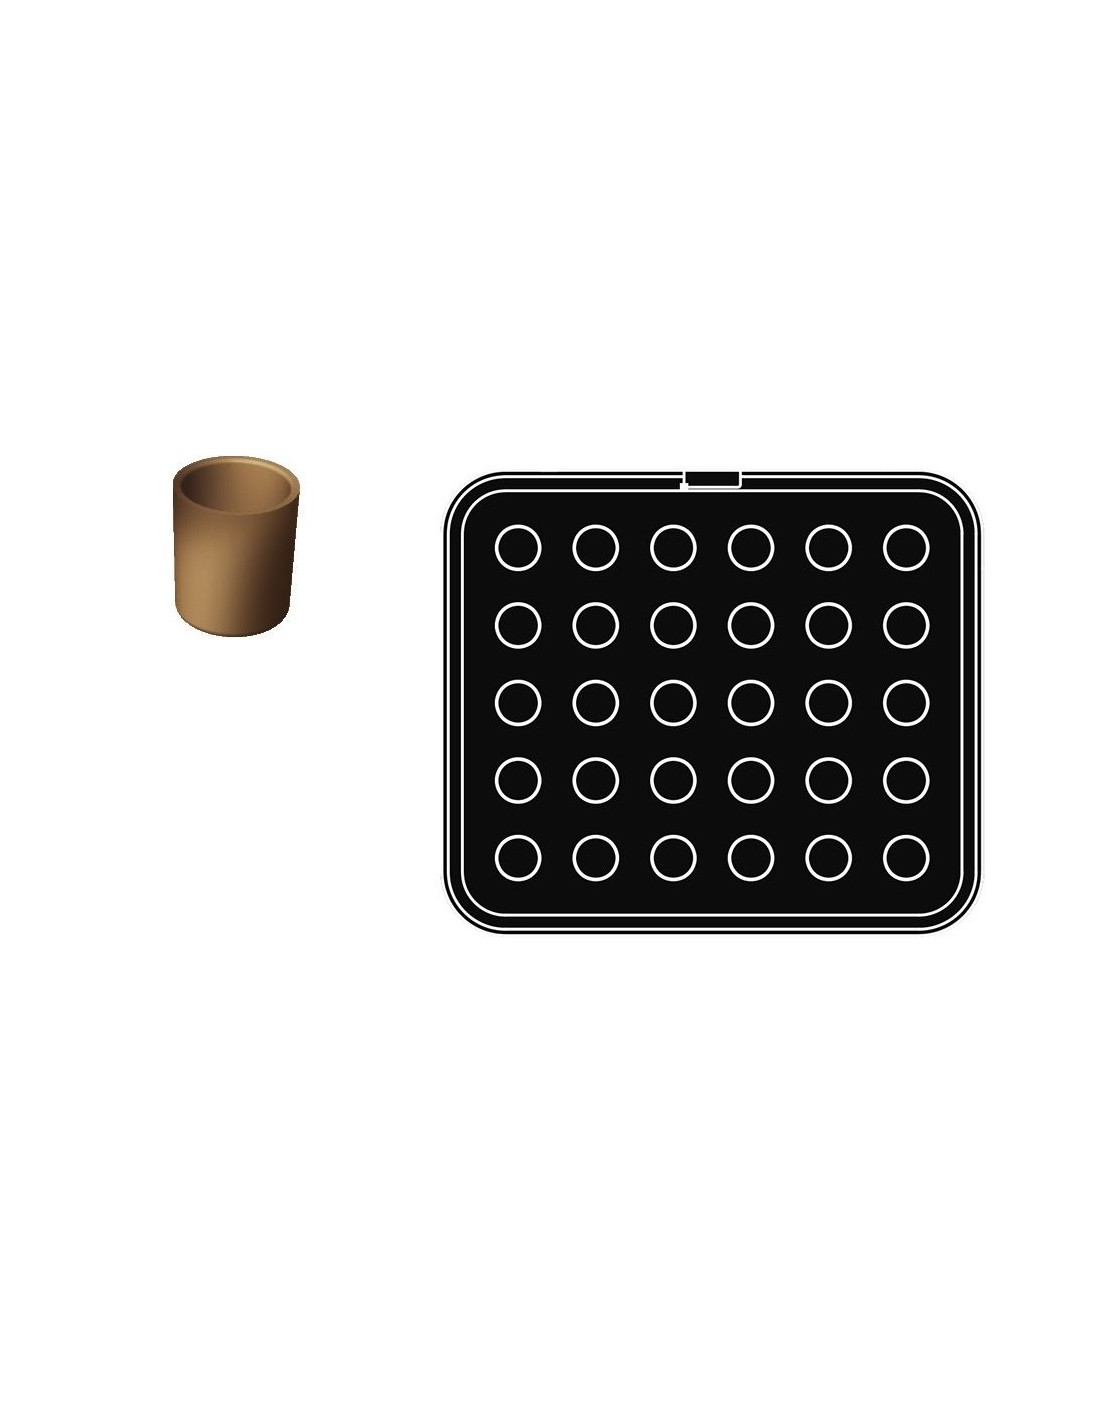 Cookmatic especial - molde redondo - Dim mm 31 x35 - Sólo a la venta con el modelo Cookmatic